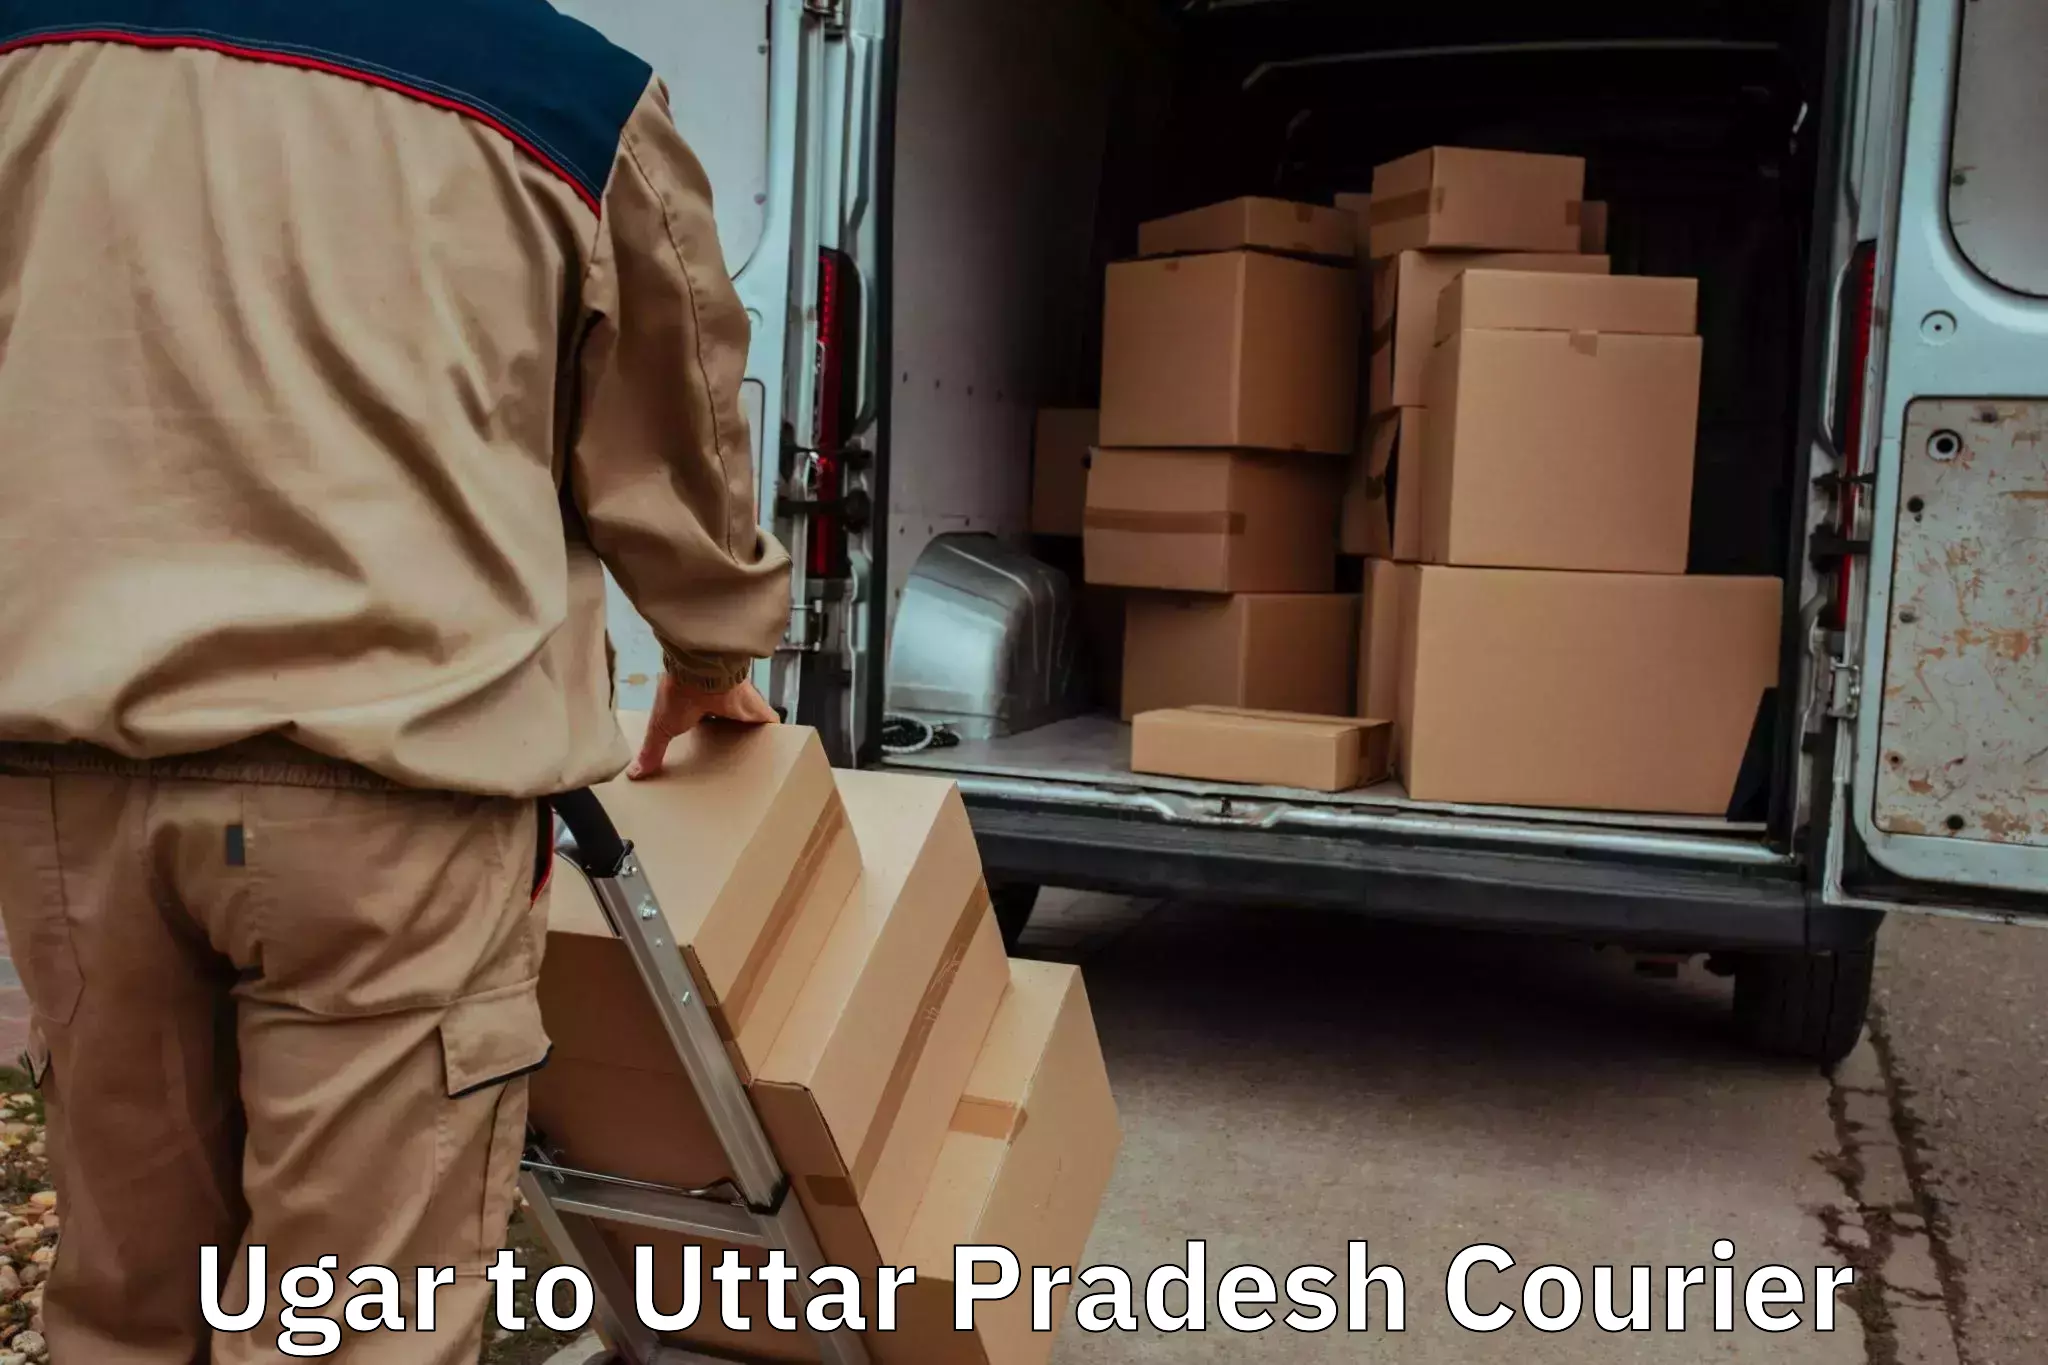 Stress-free household moving Ugar to Noida